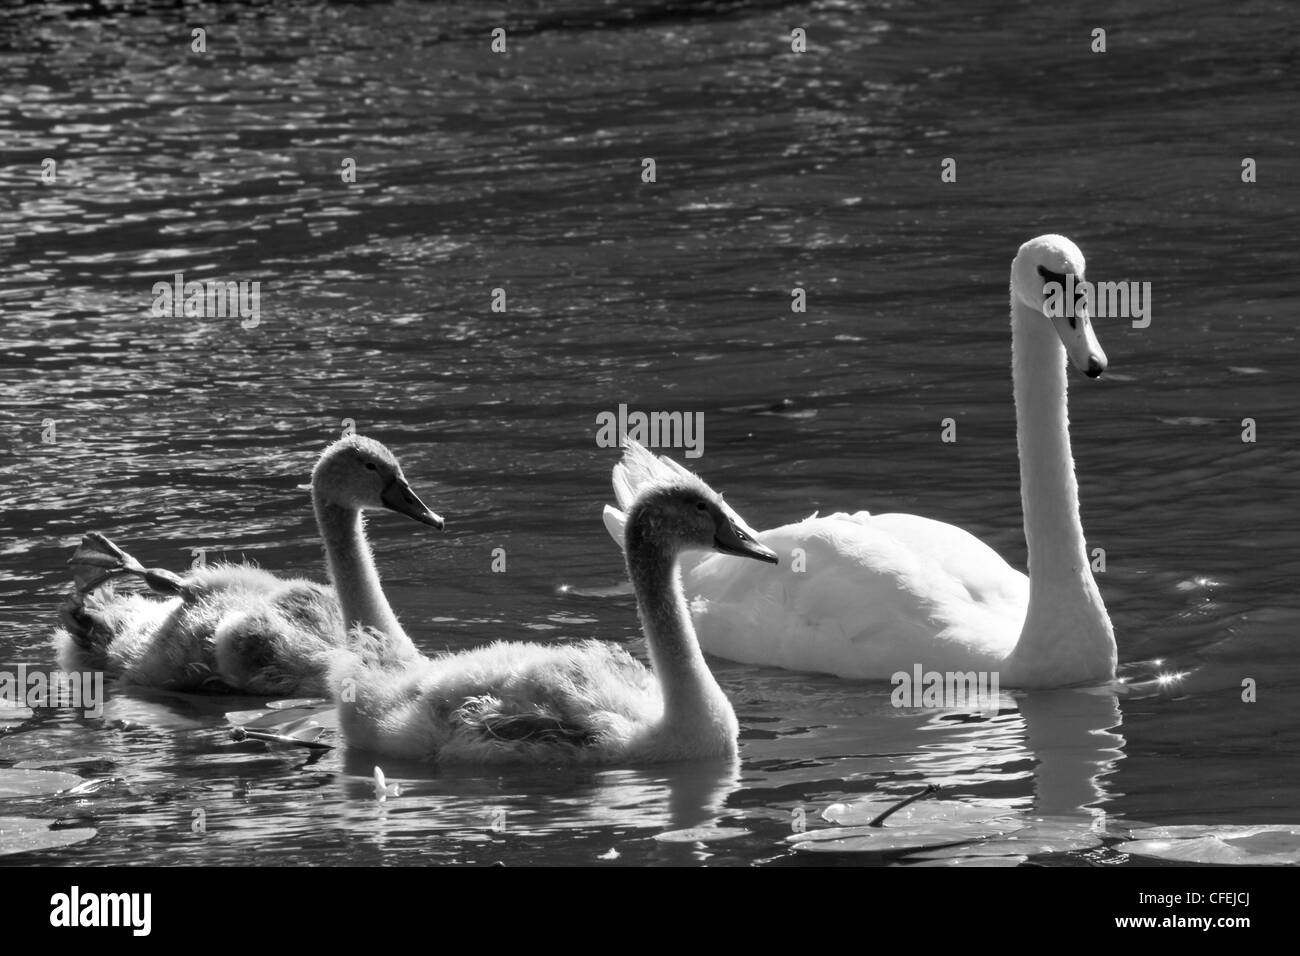 Stumm, Schwäne oder Cygnus Olor Familly schwimmen auf dem Fluss - schwarz / weiß Bild Stockfoto